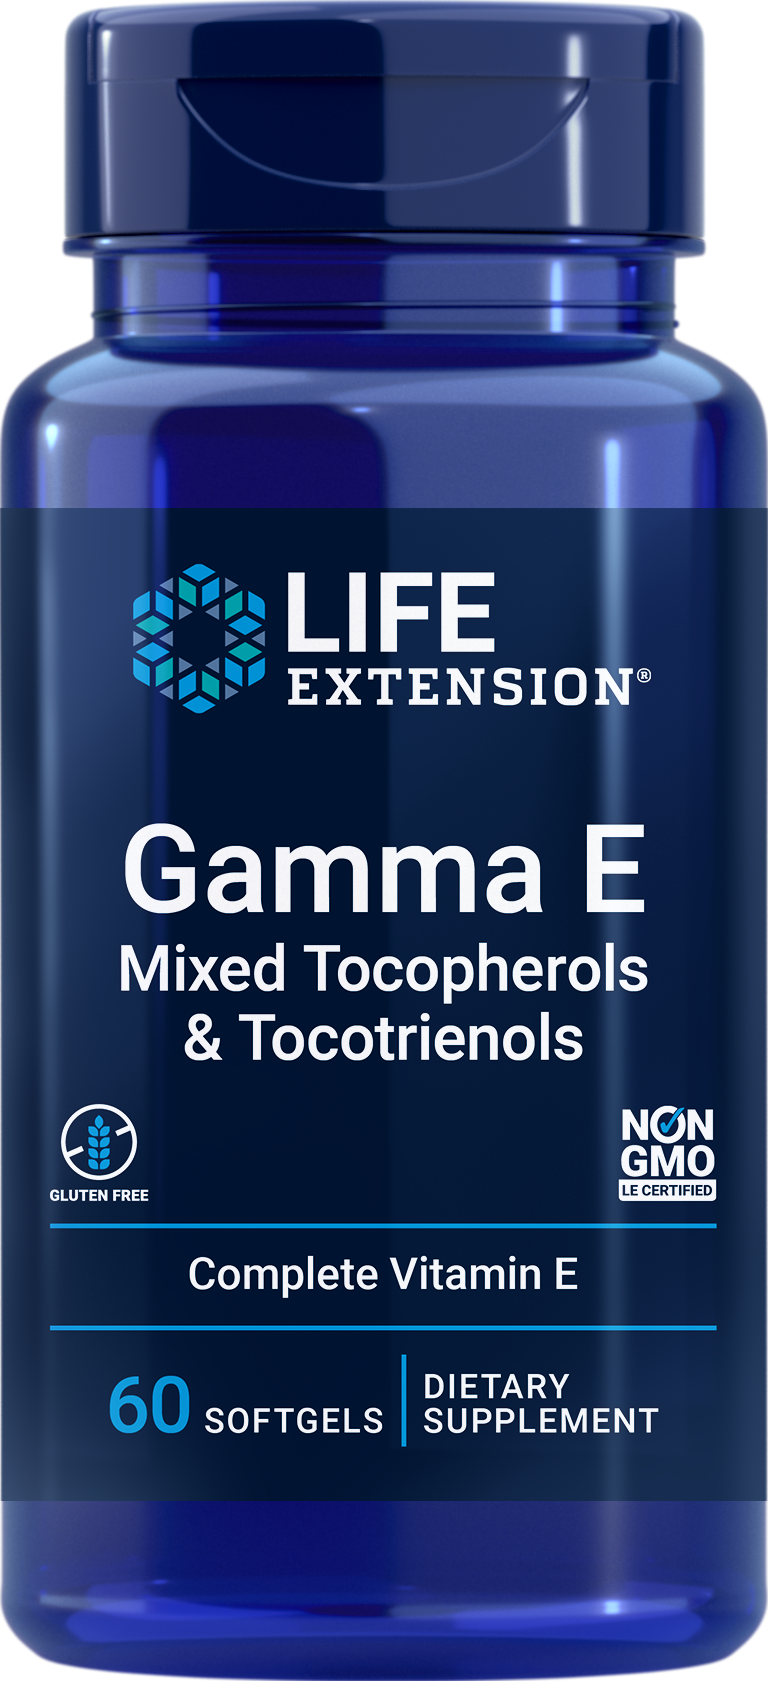 Life Extension Gamma E Mixed Tocopherols & Tocotrienols 60softgels